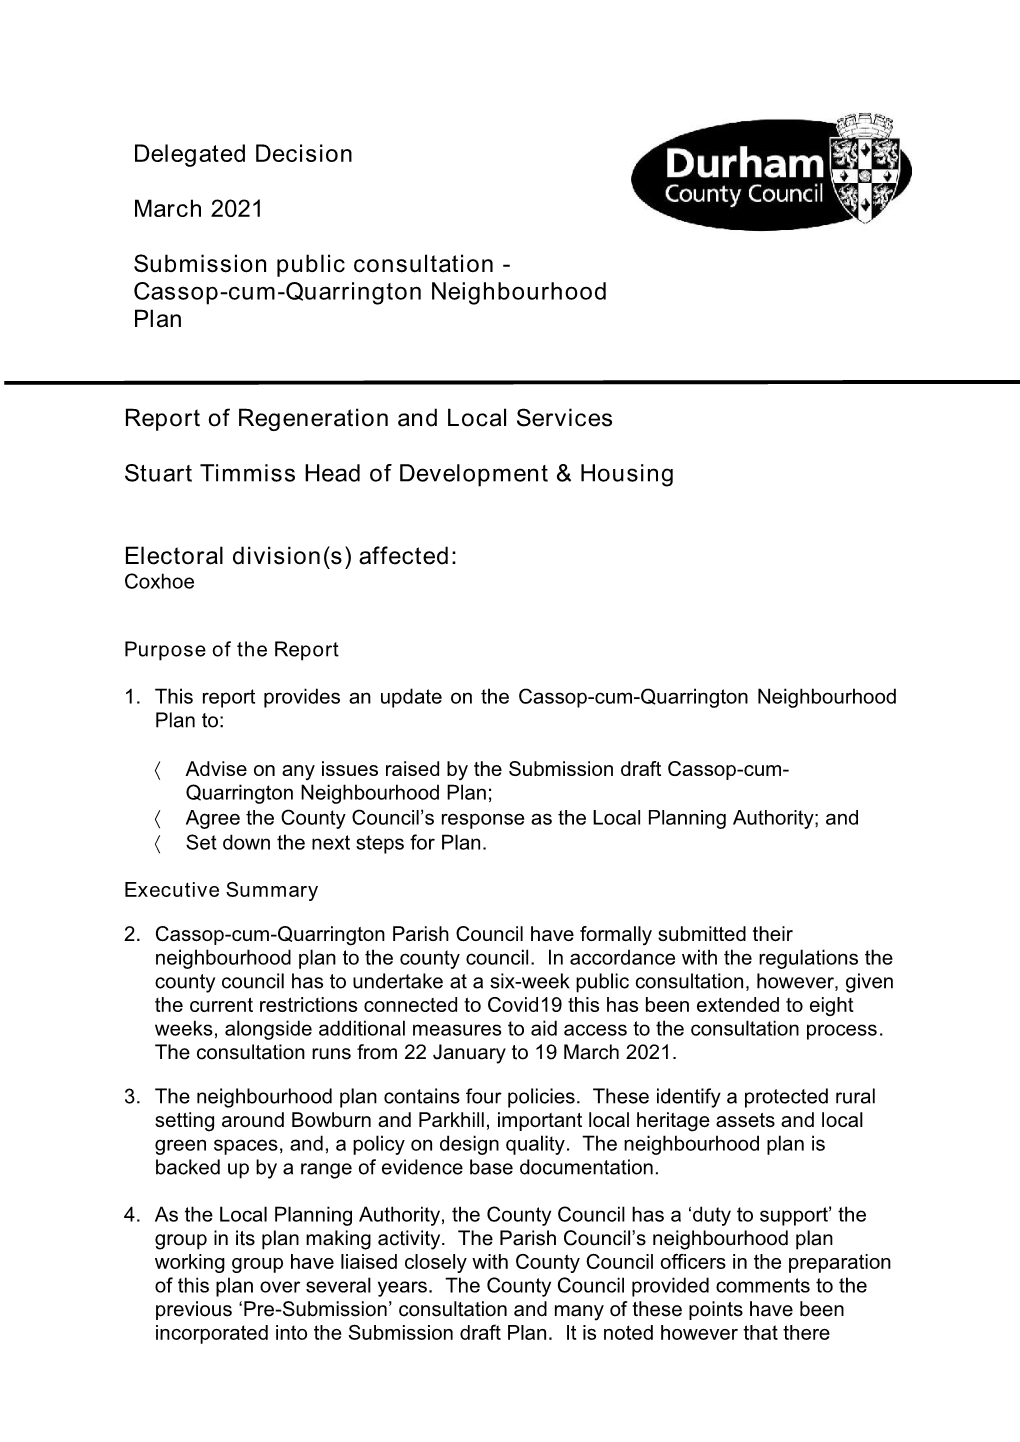 Cassop-Cum-Quarrington Neighbourhood Plan Report Of